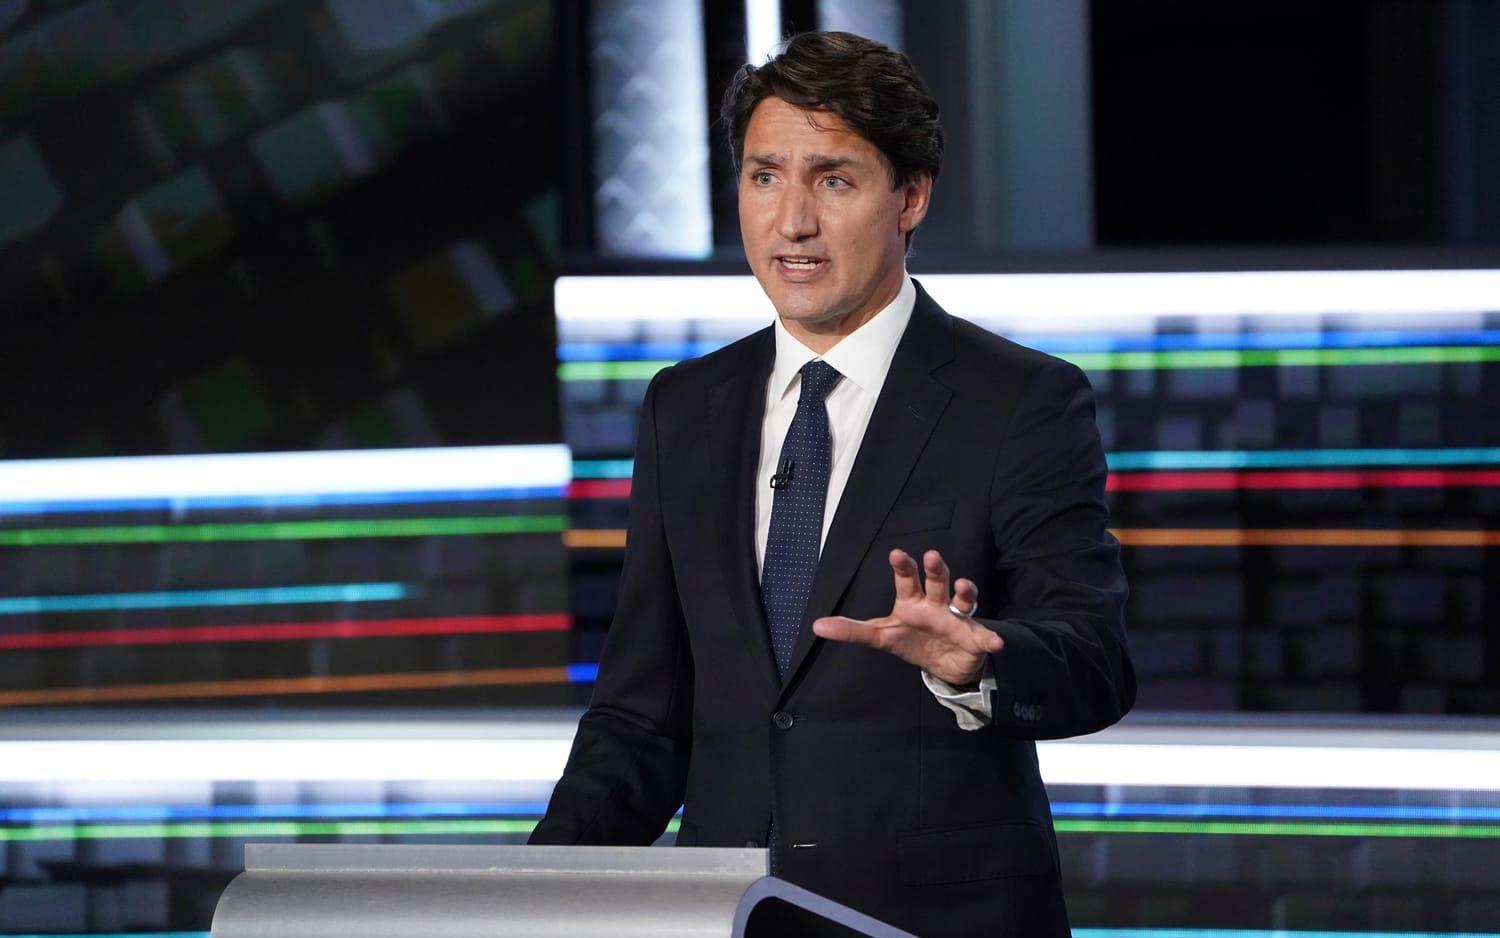 Efter sex år vid makten – och med två år kvar av mandatperioden – utlyste Trudeau nyval i augusti under föresatsen att kanadensarna borde få säga sitt om vem de vill ska ansvara för kostnaderna för att hantera pandemin.